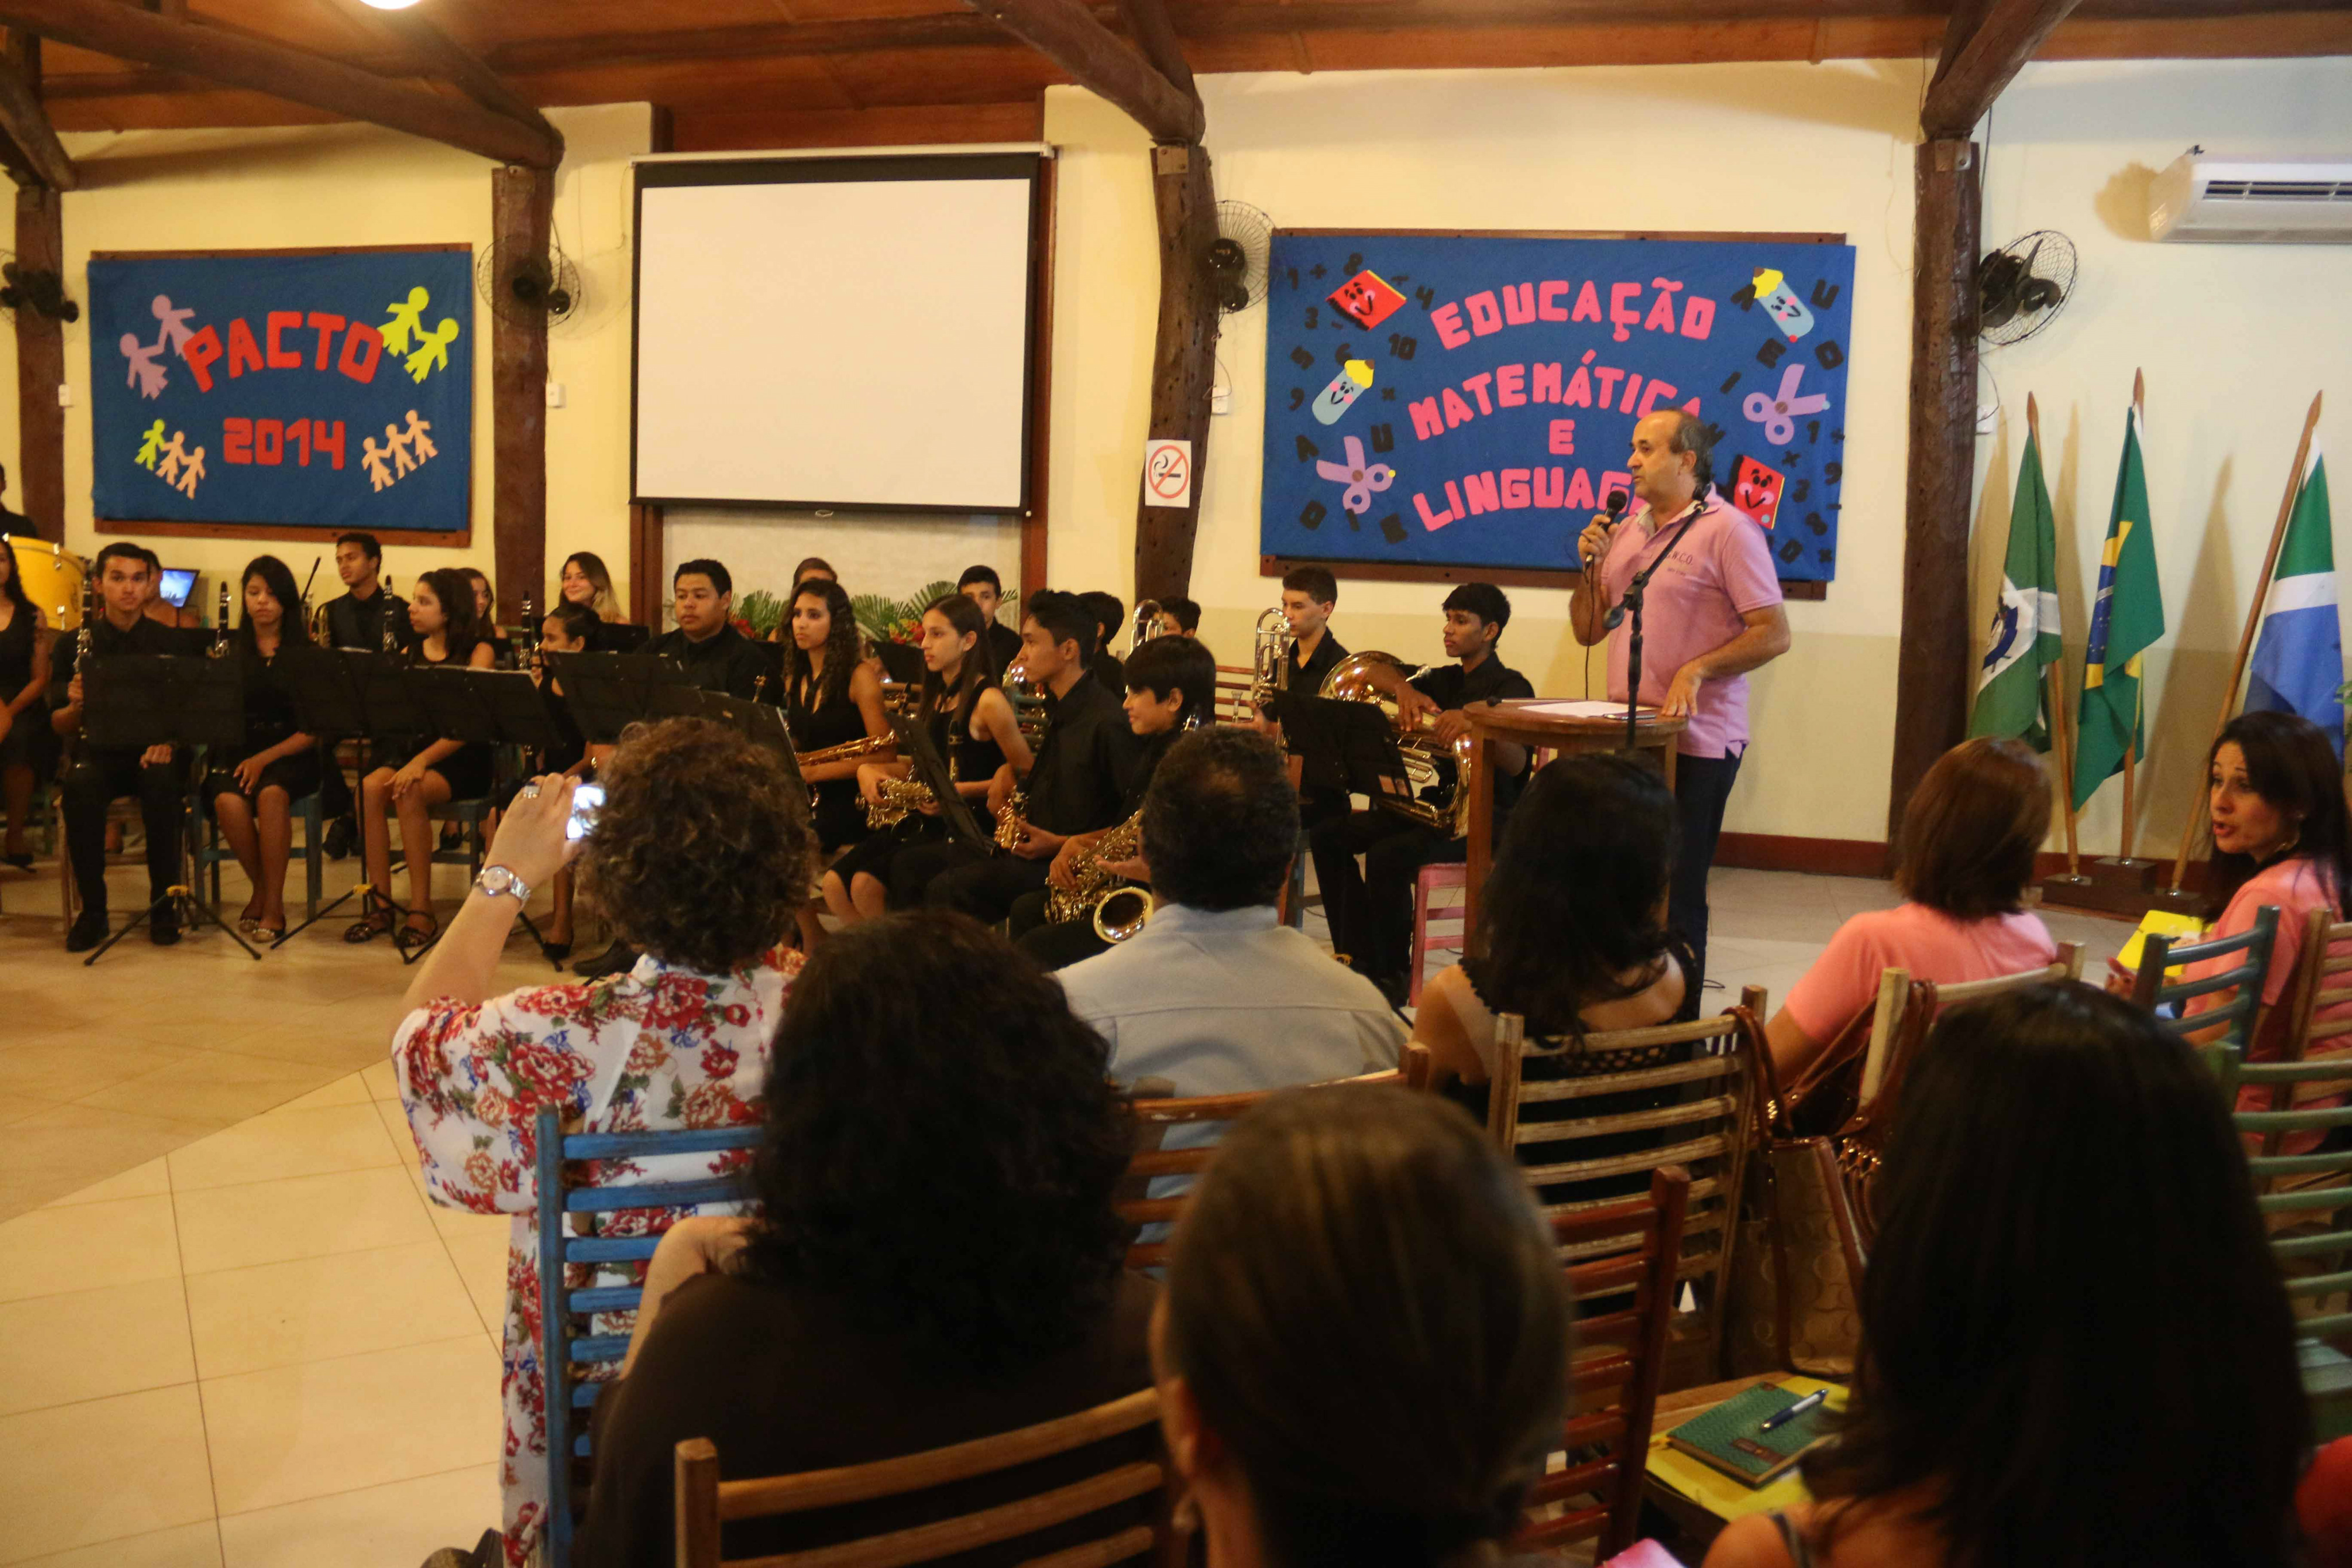 Pacto 2014 encerra atividades com palestras, apresentações culturais e confraternização entre professores